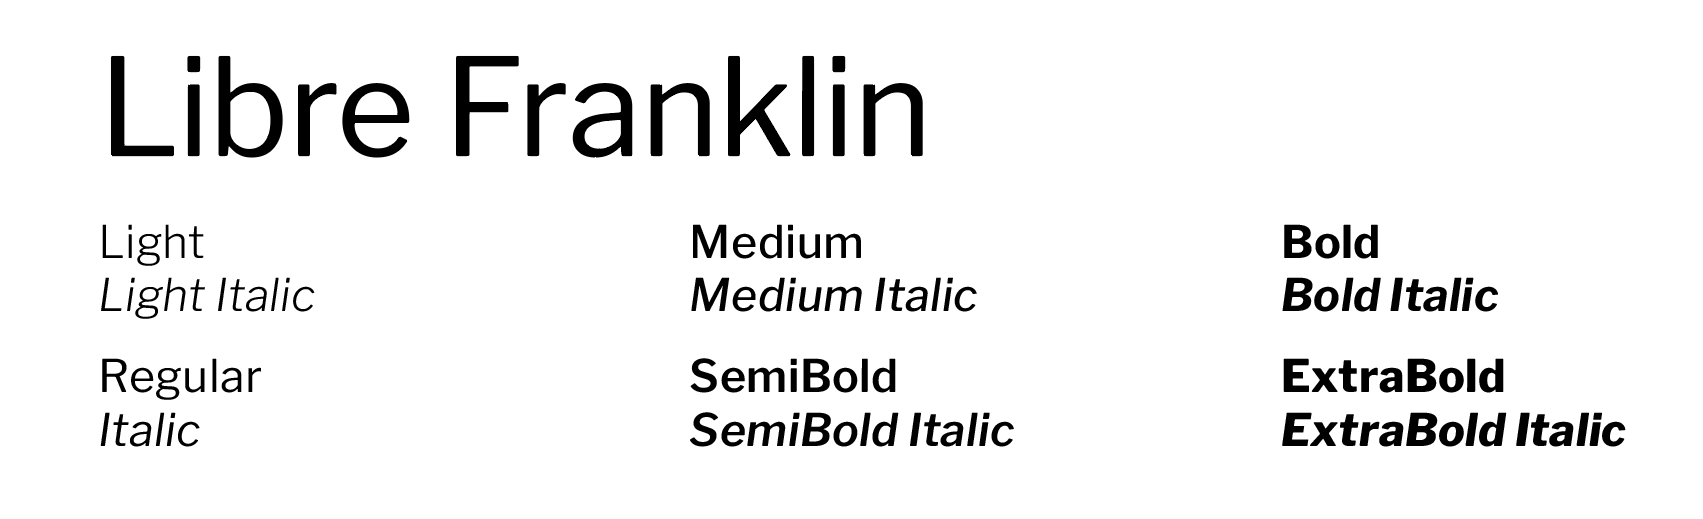 Libre Franklin font examples